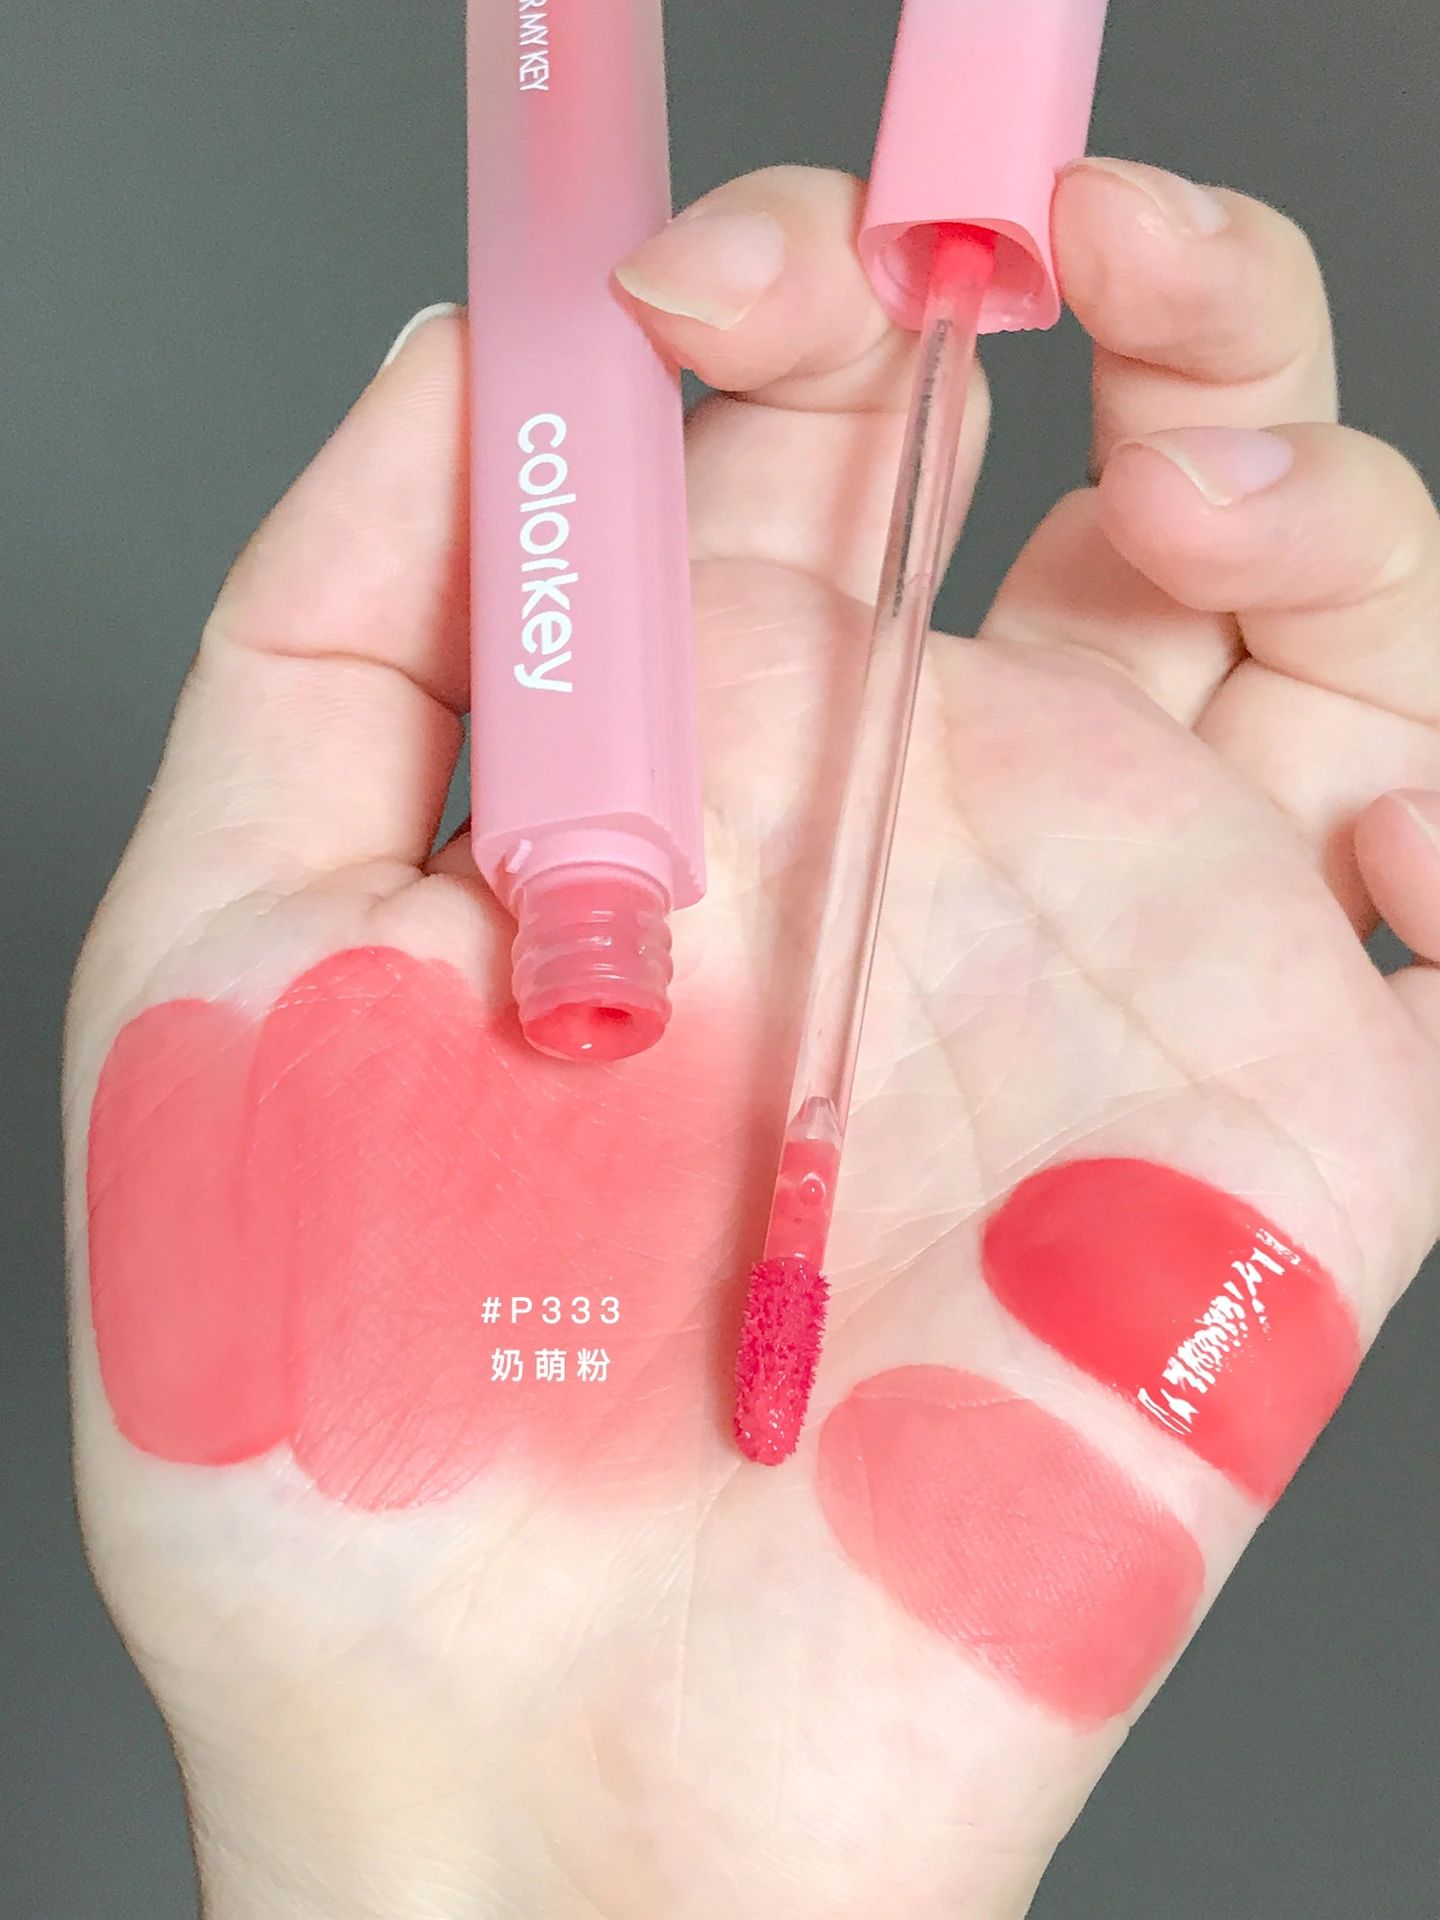 Colorkey Pink Diamond Series Water Mist Lip Gloss 1.8g 珂拉琪粉钻系列水雾唇露